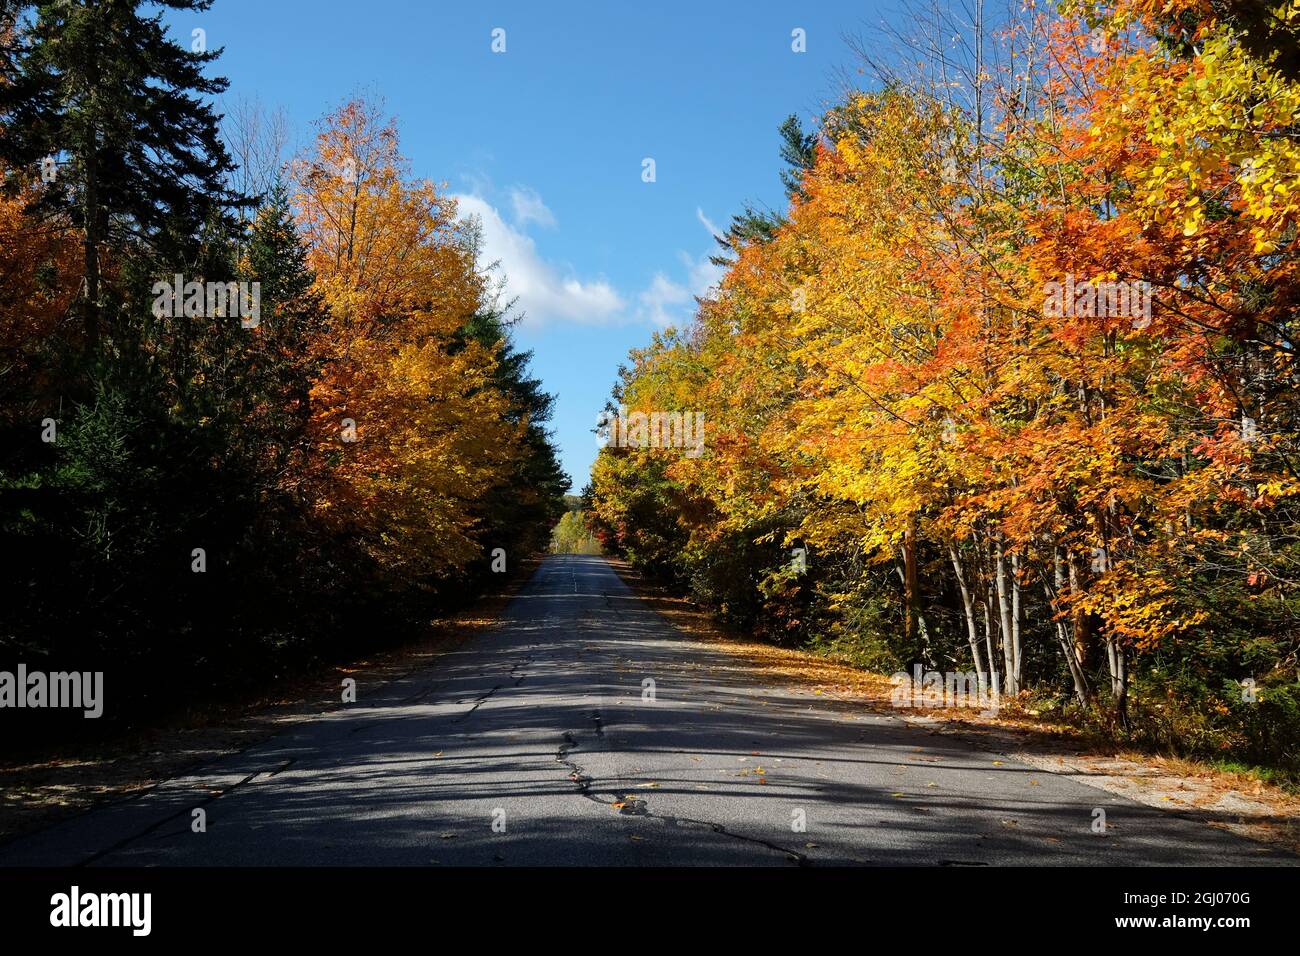 Eine leere Straße, Straße mit heller Herbstfarbe von gelben, orangefarbenen Blättern im Herbst. In Surry, Maine, Neuengland. Stockfoto